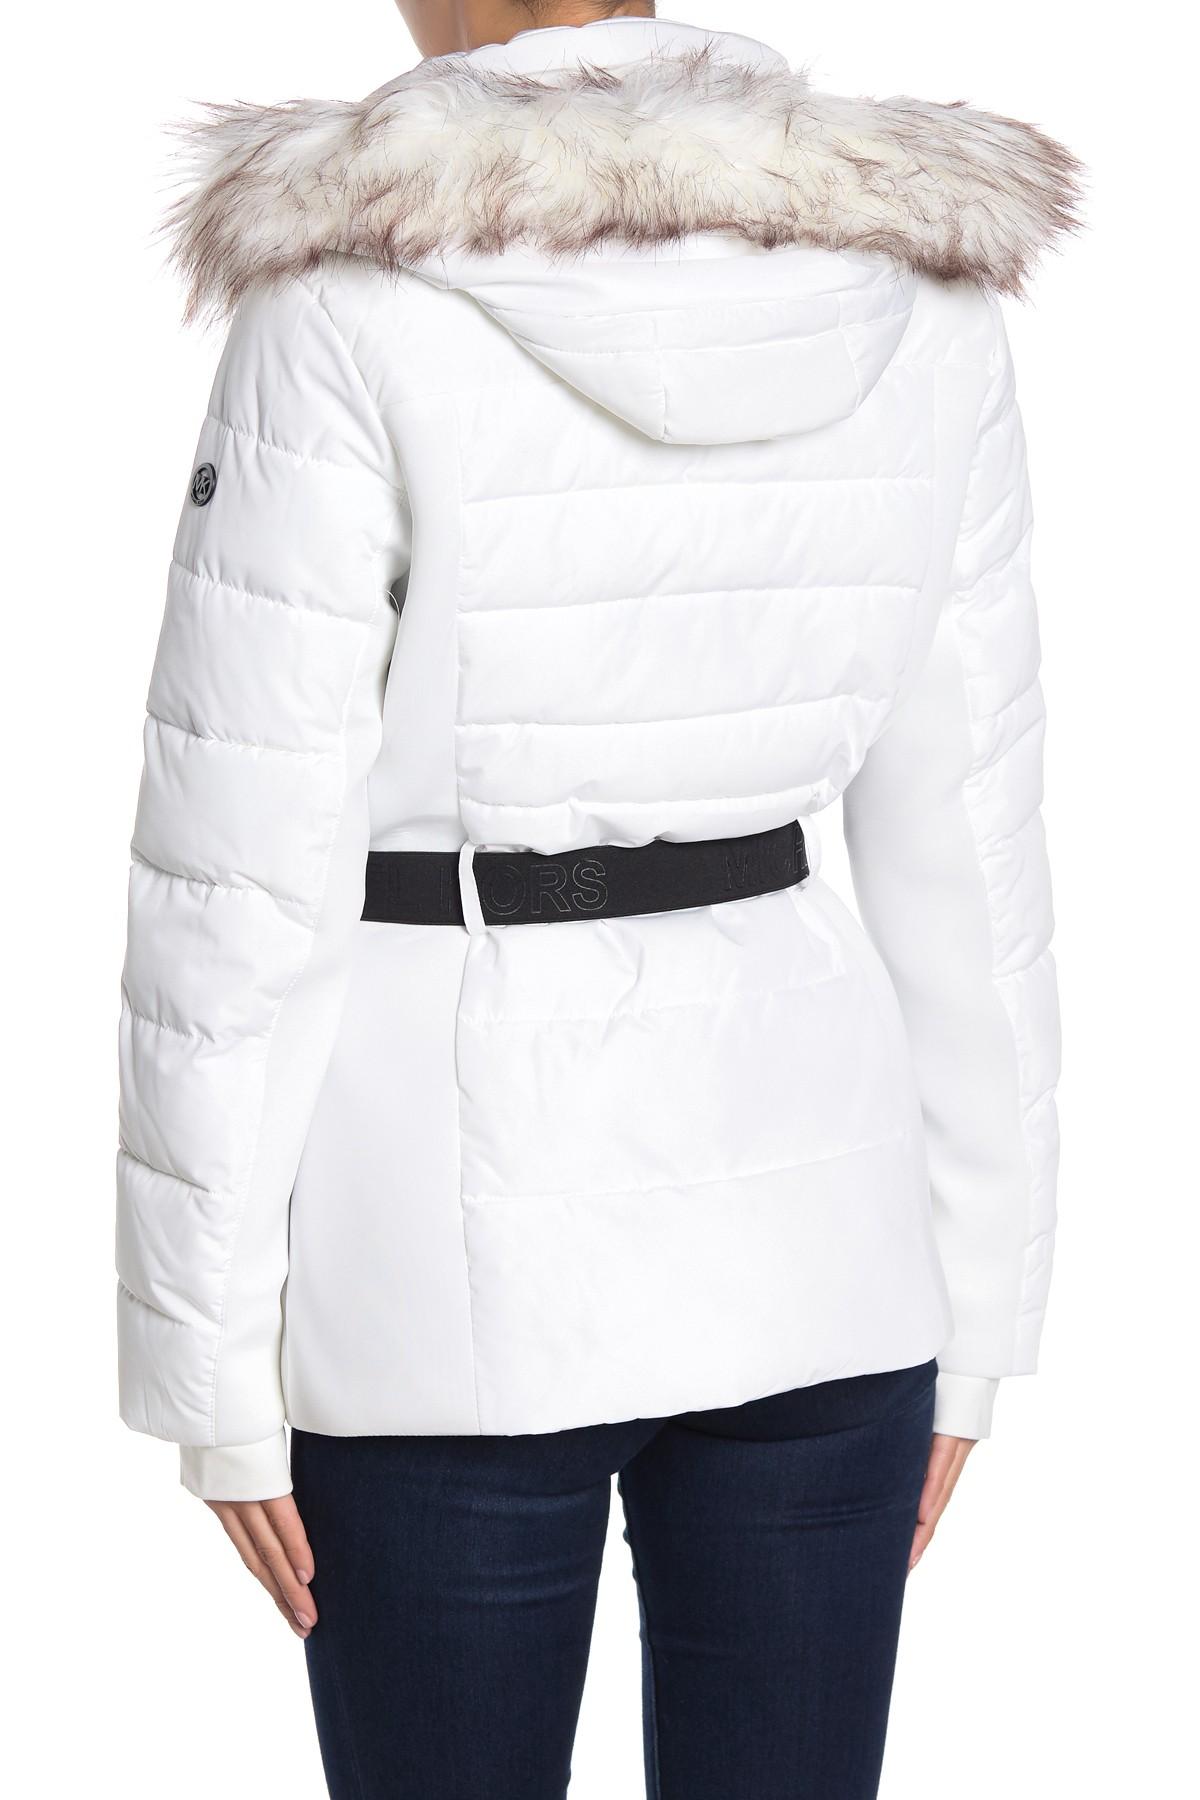 Michael Kors White Jacket on Sale, 54% OFF | www.cernebrasil.com